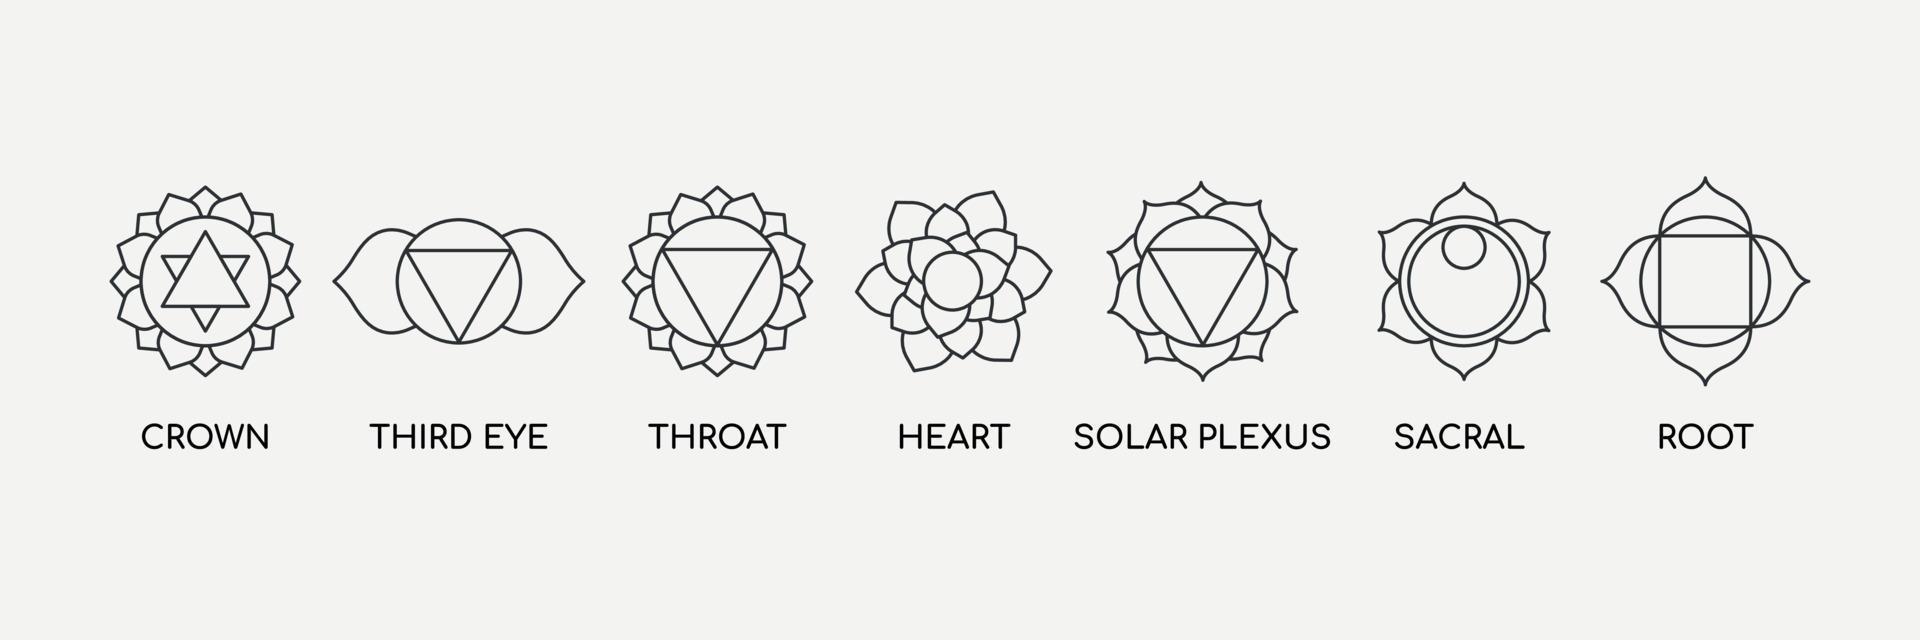 sette chakra con set di icone della linea di denominazione. centri energetici del corpo, usati nell'ayurveda e nell'induismo. yoga, simbolo del buddismo... illustrazione vettoriale